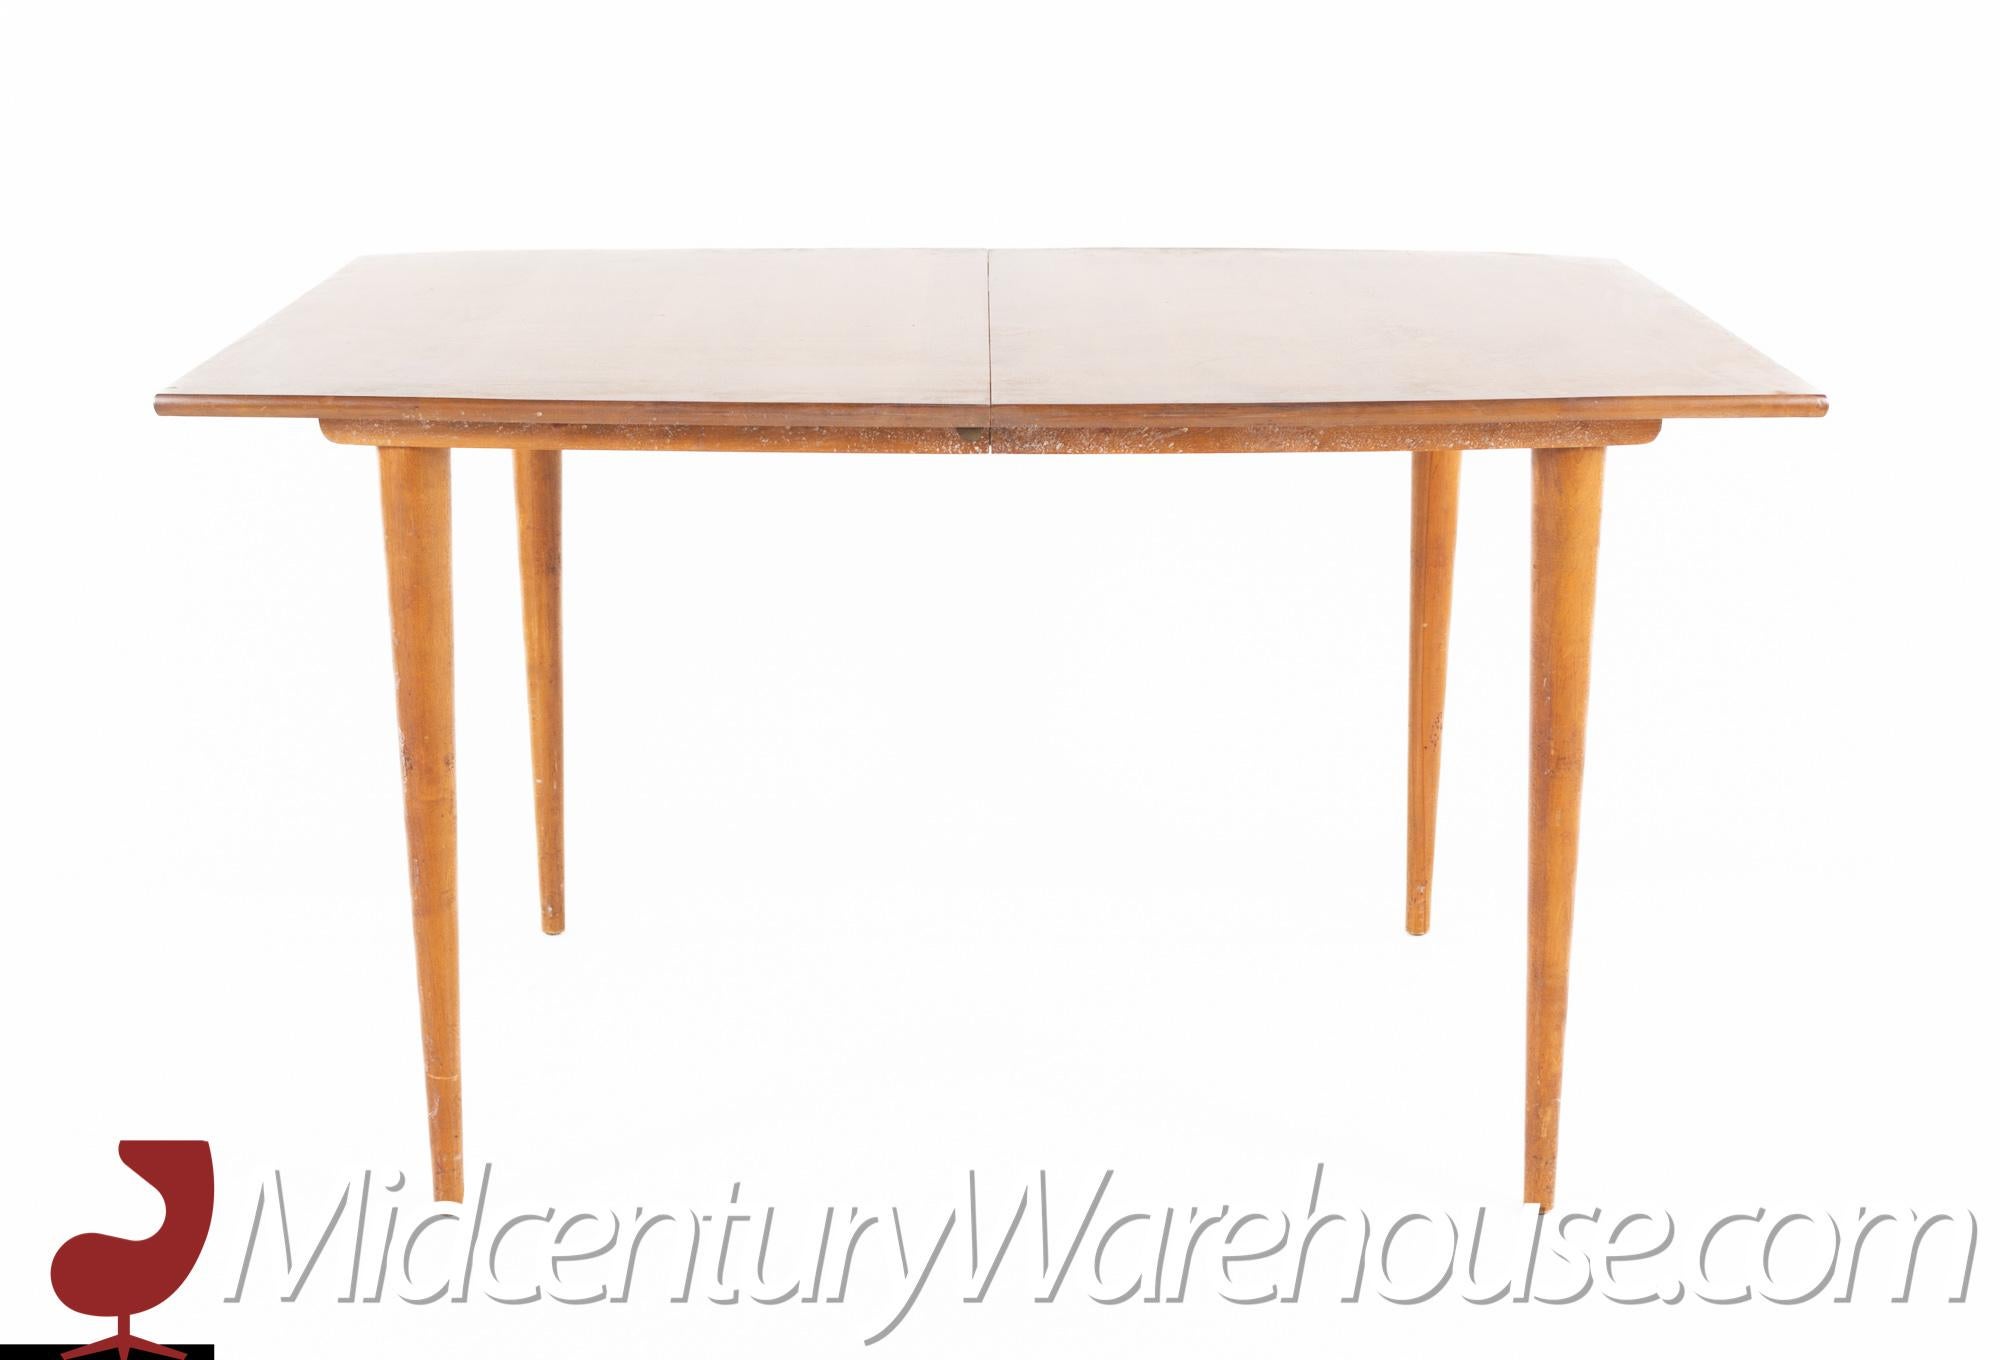 Conant Ball Stil Mitte des Jahrhunderts blond rechteckigen Esstisch mit Wirbel Beinen.

Dieser Tisch misst: 54 breit x 39 tief x 30,25 hoch, mit einem Stuhl Abstand von 28 Zoll.

Alle Möbelstücke sind in einem so genannten restaurierten